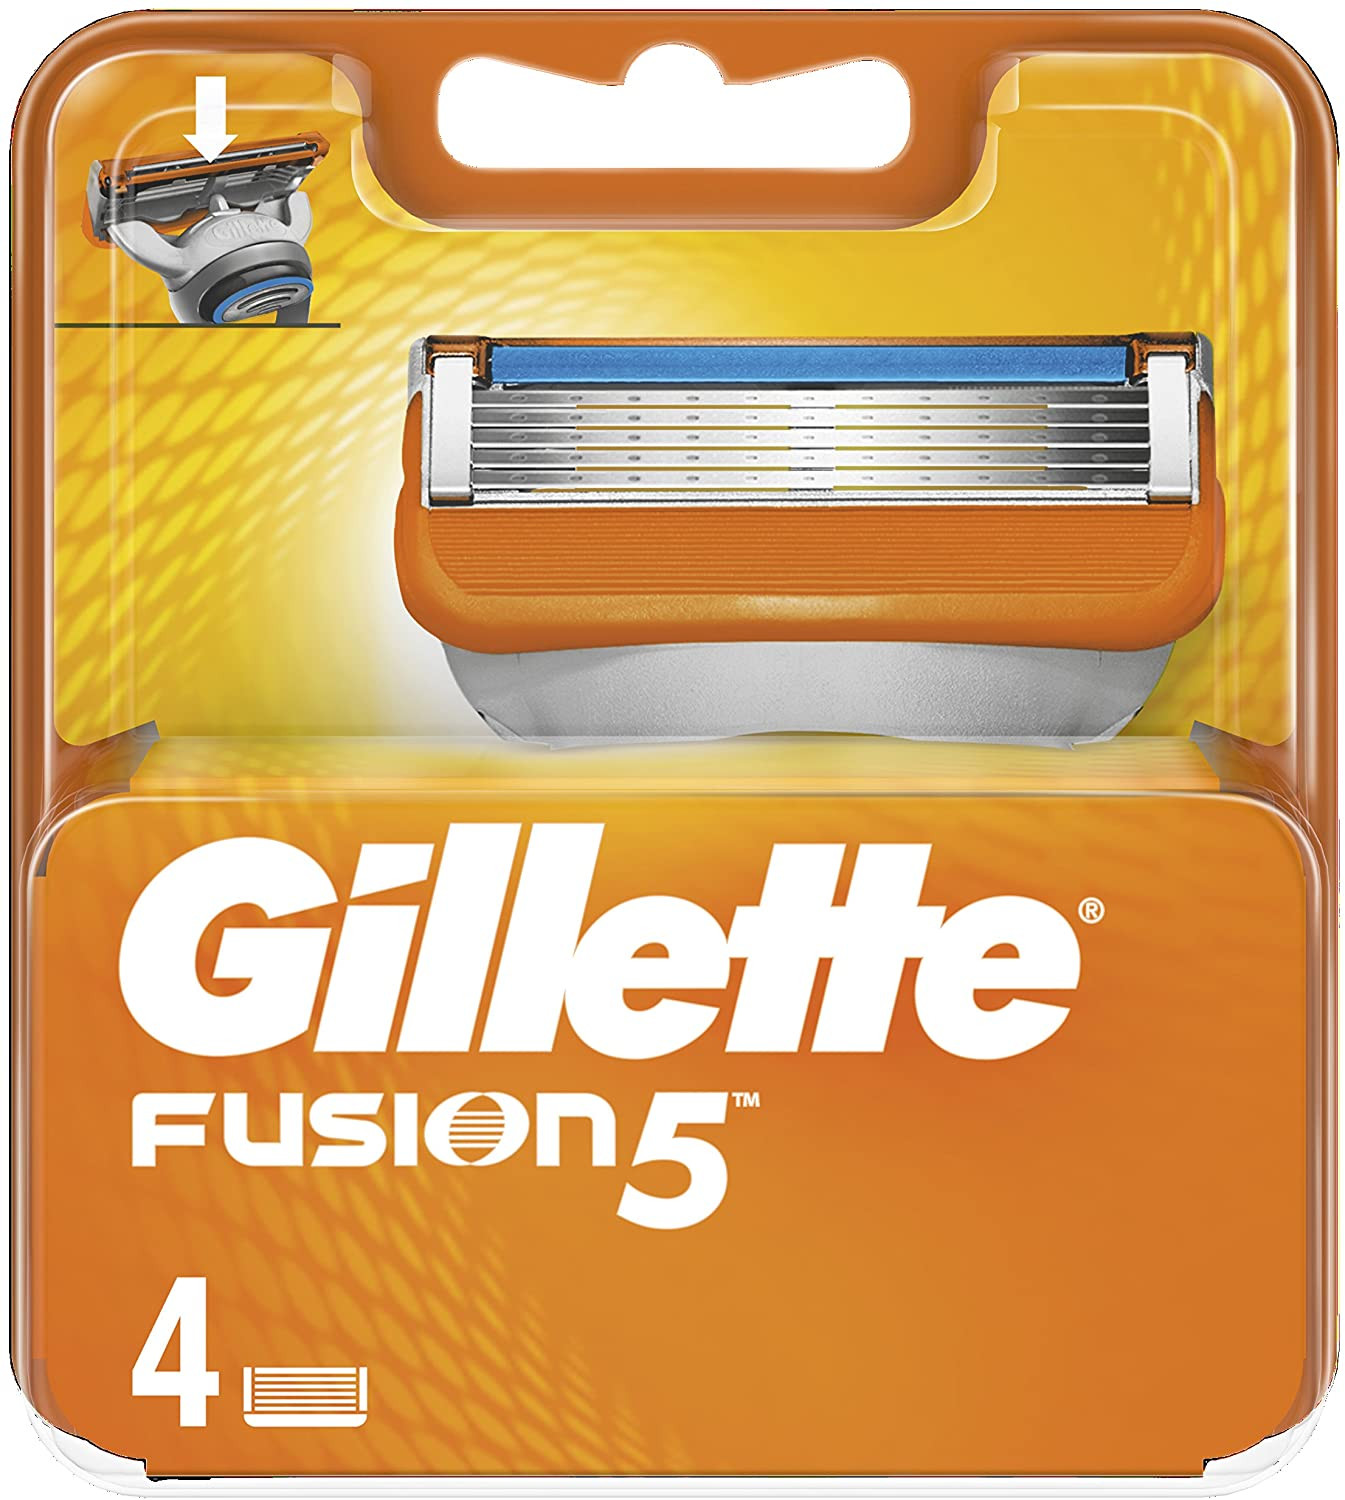 Gillette Fusion5 Maquinilla...